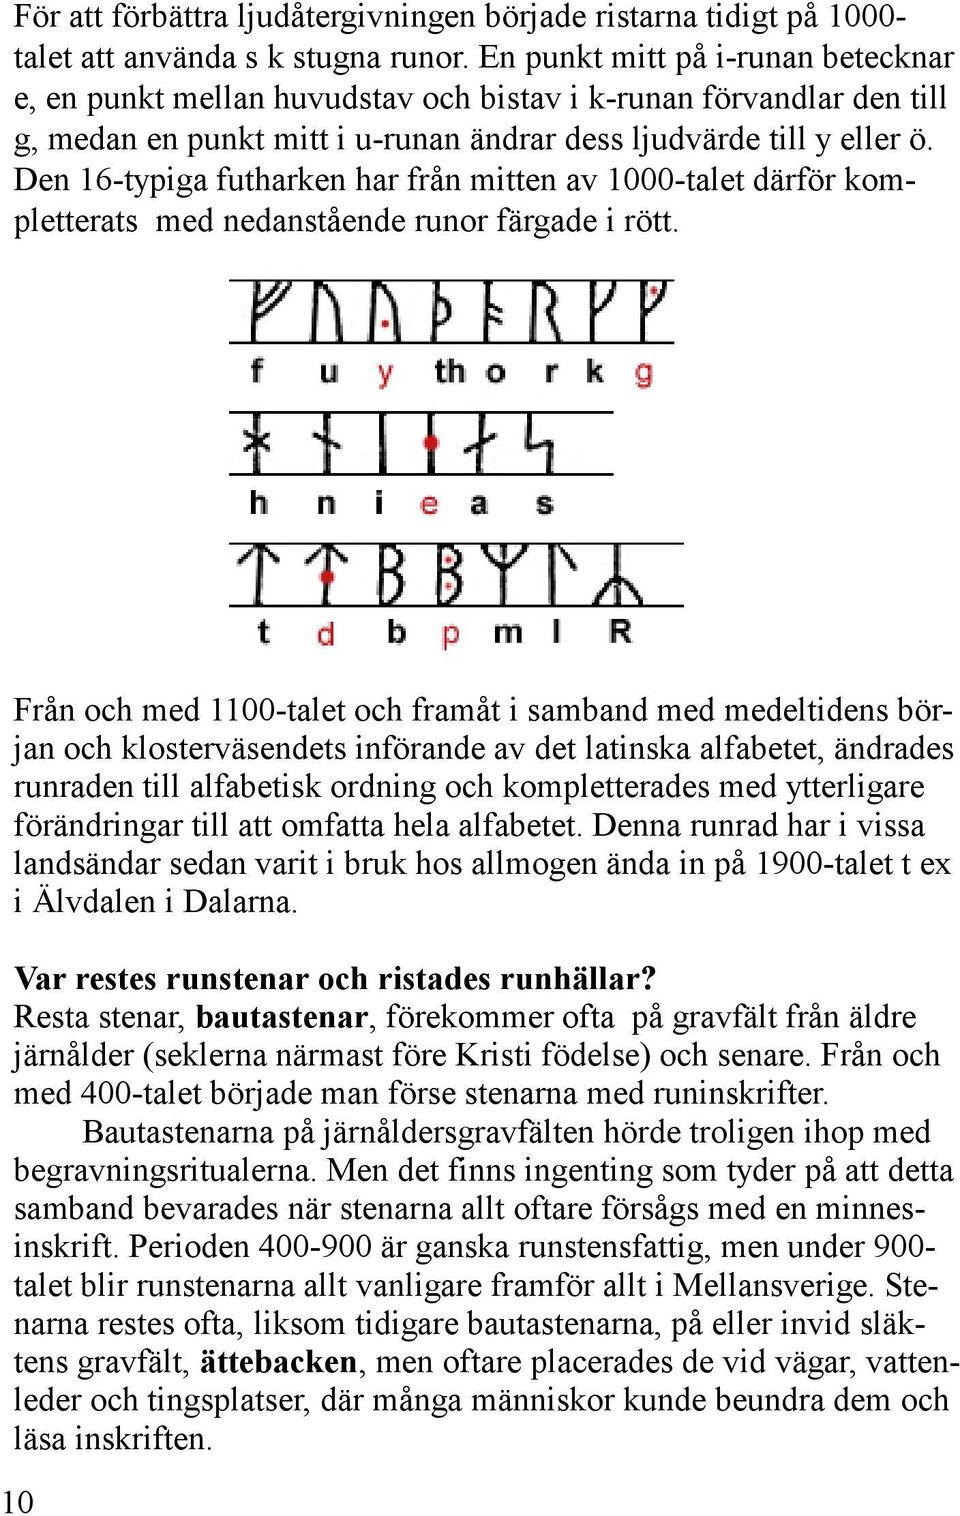 Den 16-typiga futharken har från mitten av 1000-talet därför kompletterats med nedanstående runor färgade i rött.